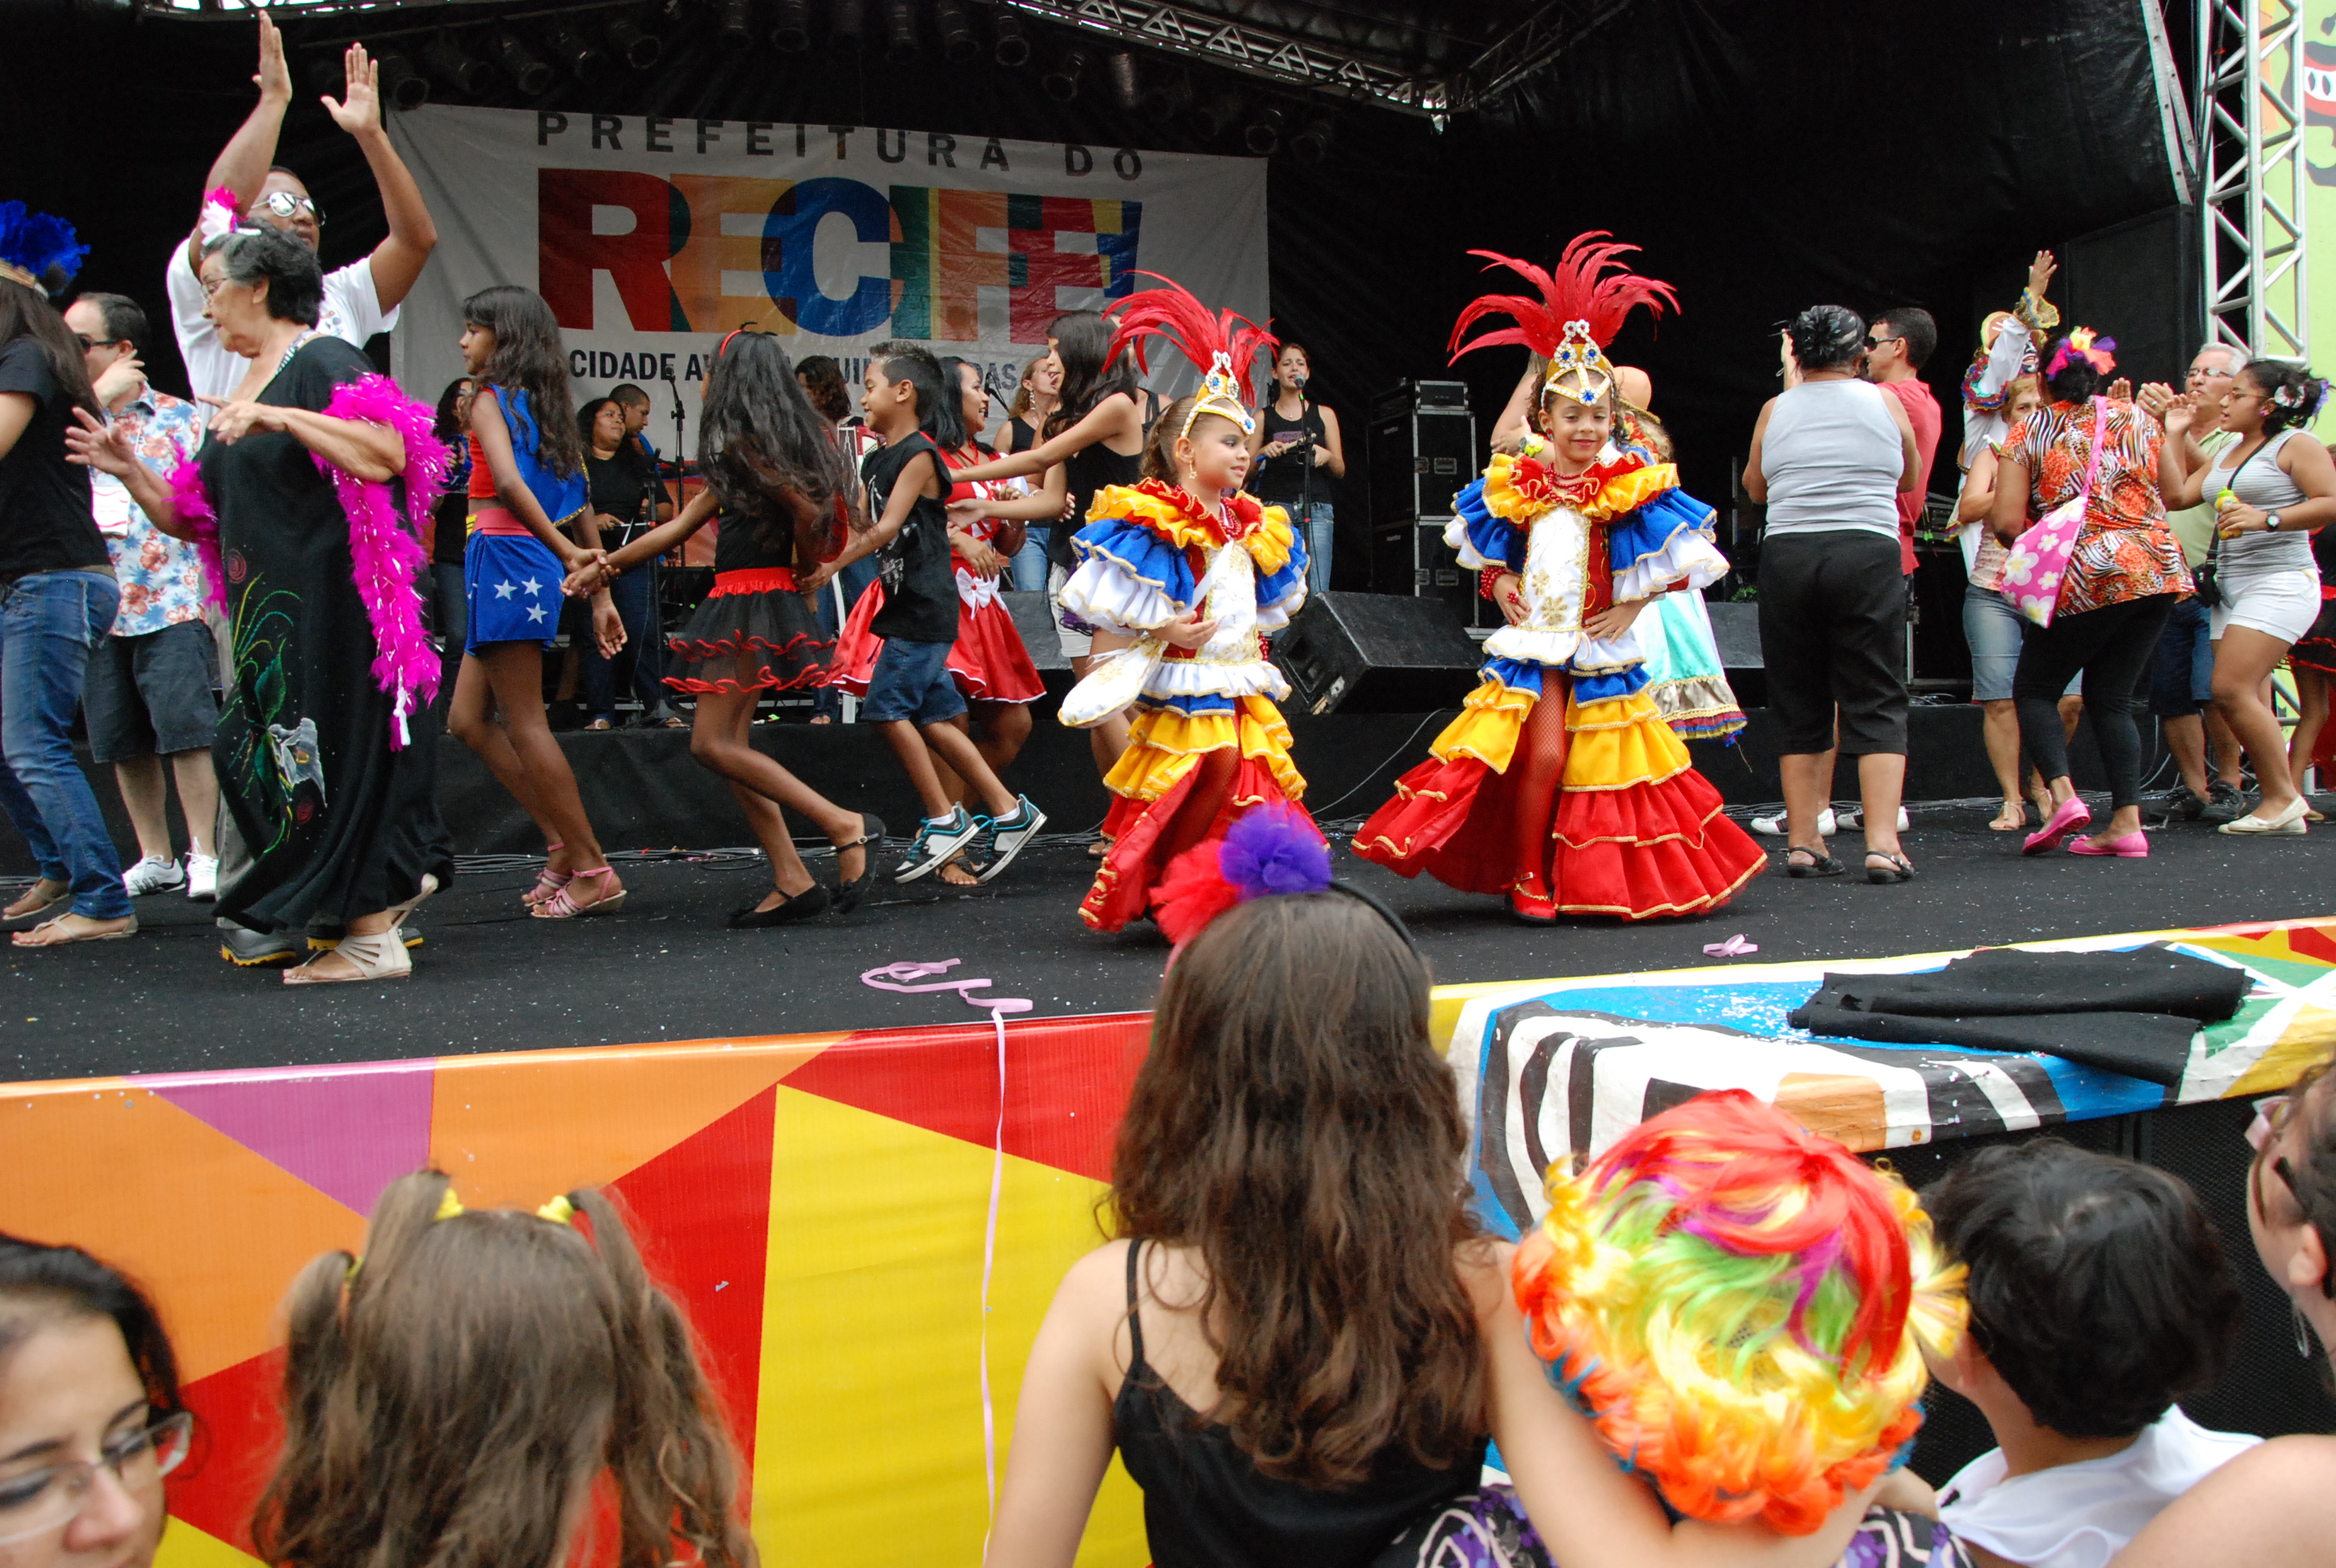 Prefeitura Do Recife Agenda Do Carnaval 2012